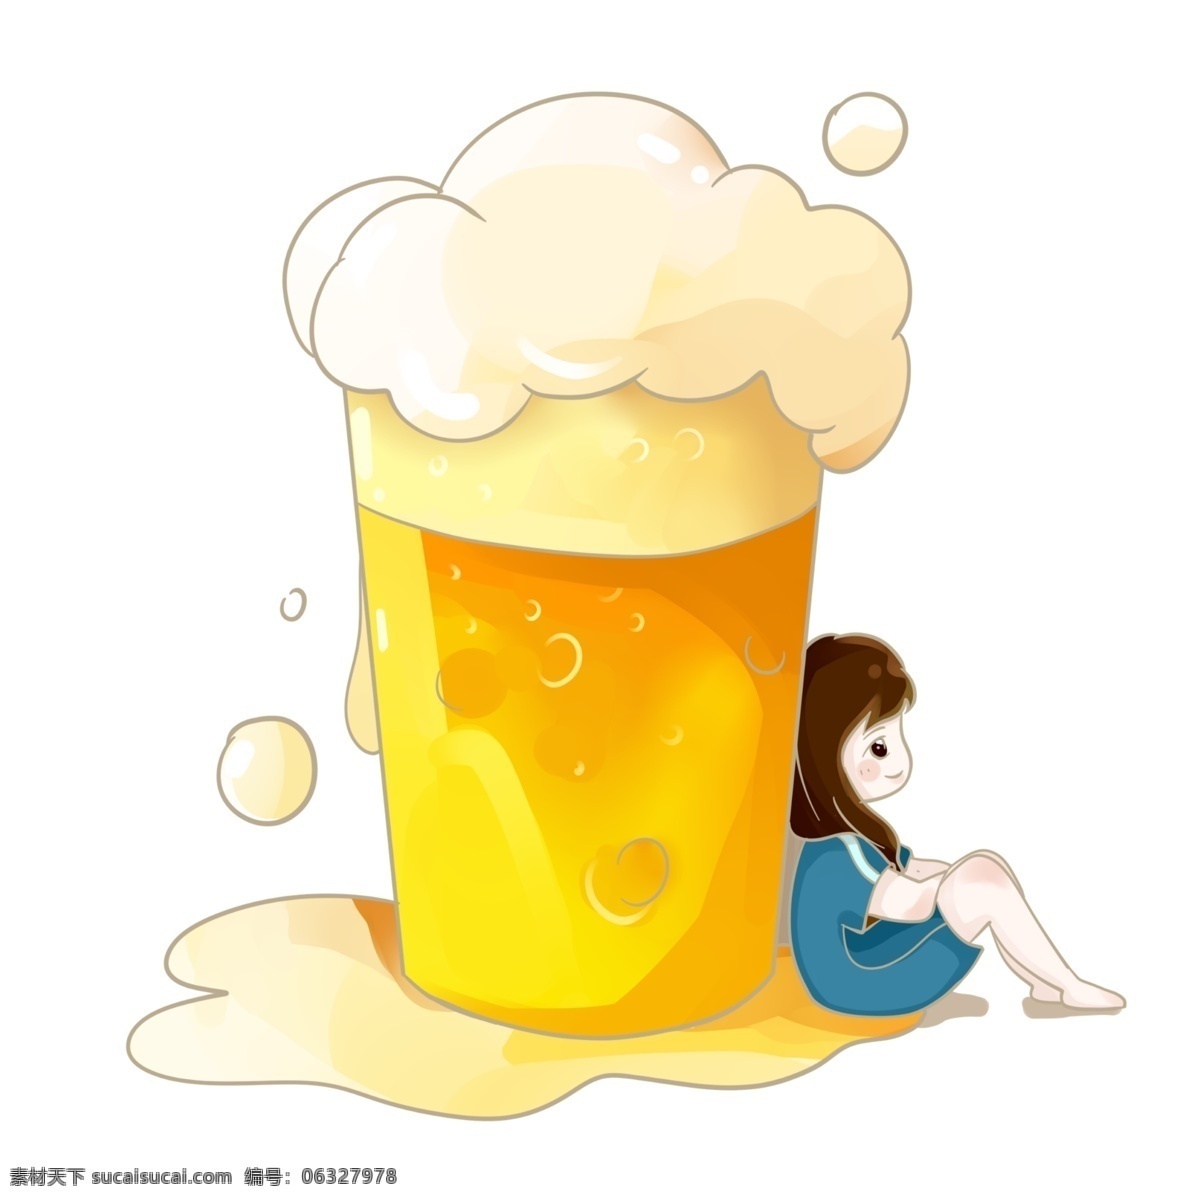 夏日 啤酒 女孩 泡泡 夏天 清凉 黄色 小清新 可爱 氧气 元气少女 创意 乘凉